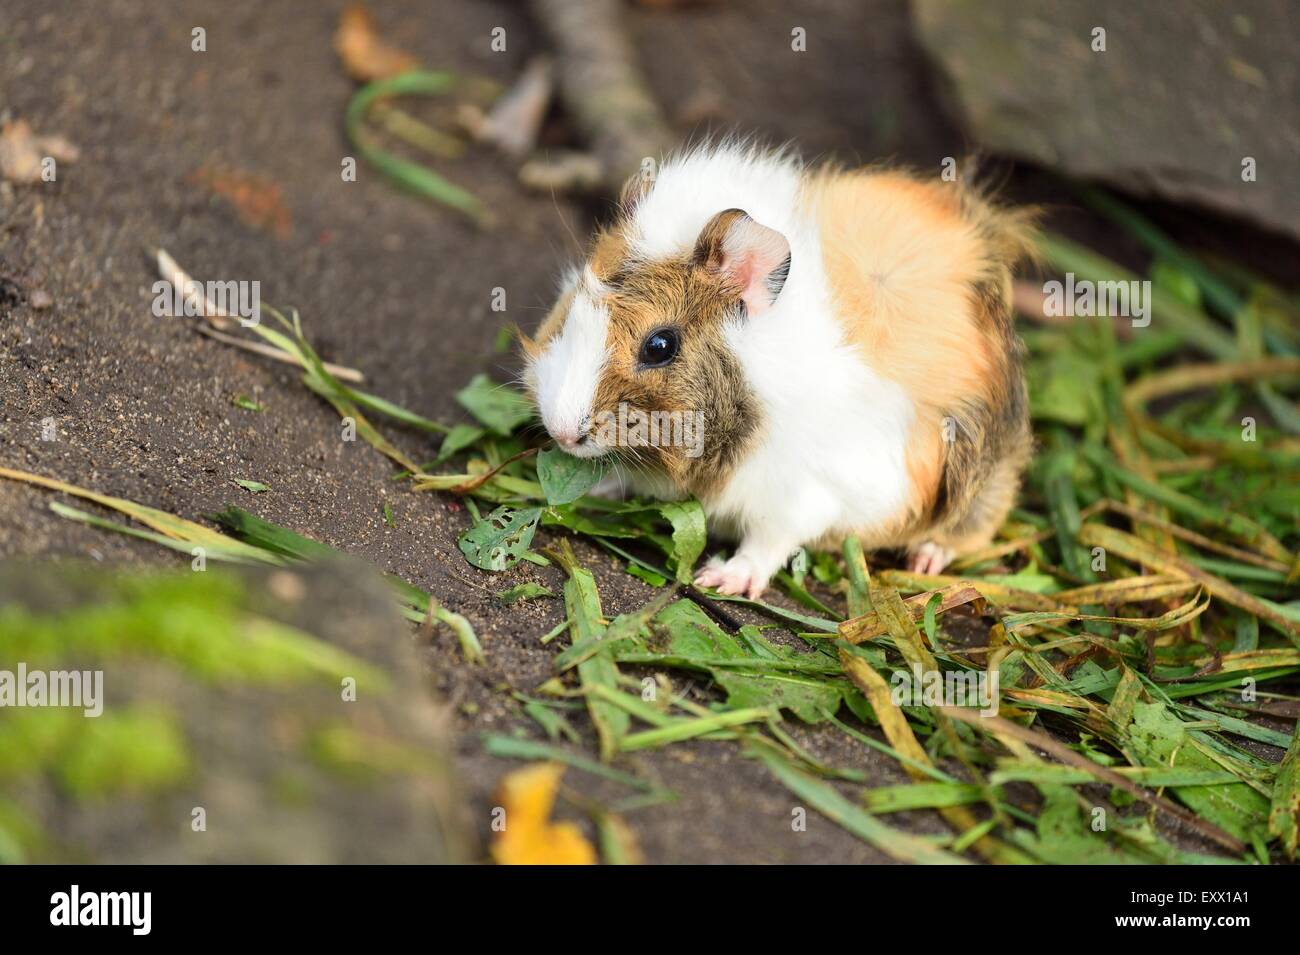 Guinea pig, Cavia porcellus, Bavaria, Germany, Europe Stock Photo